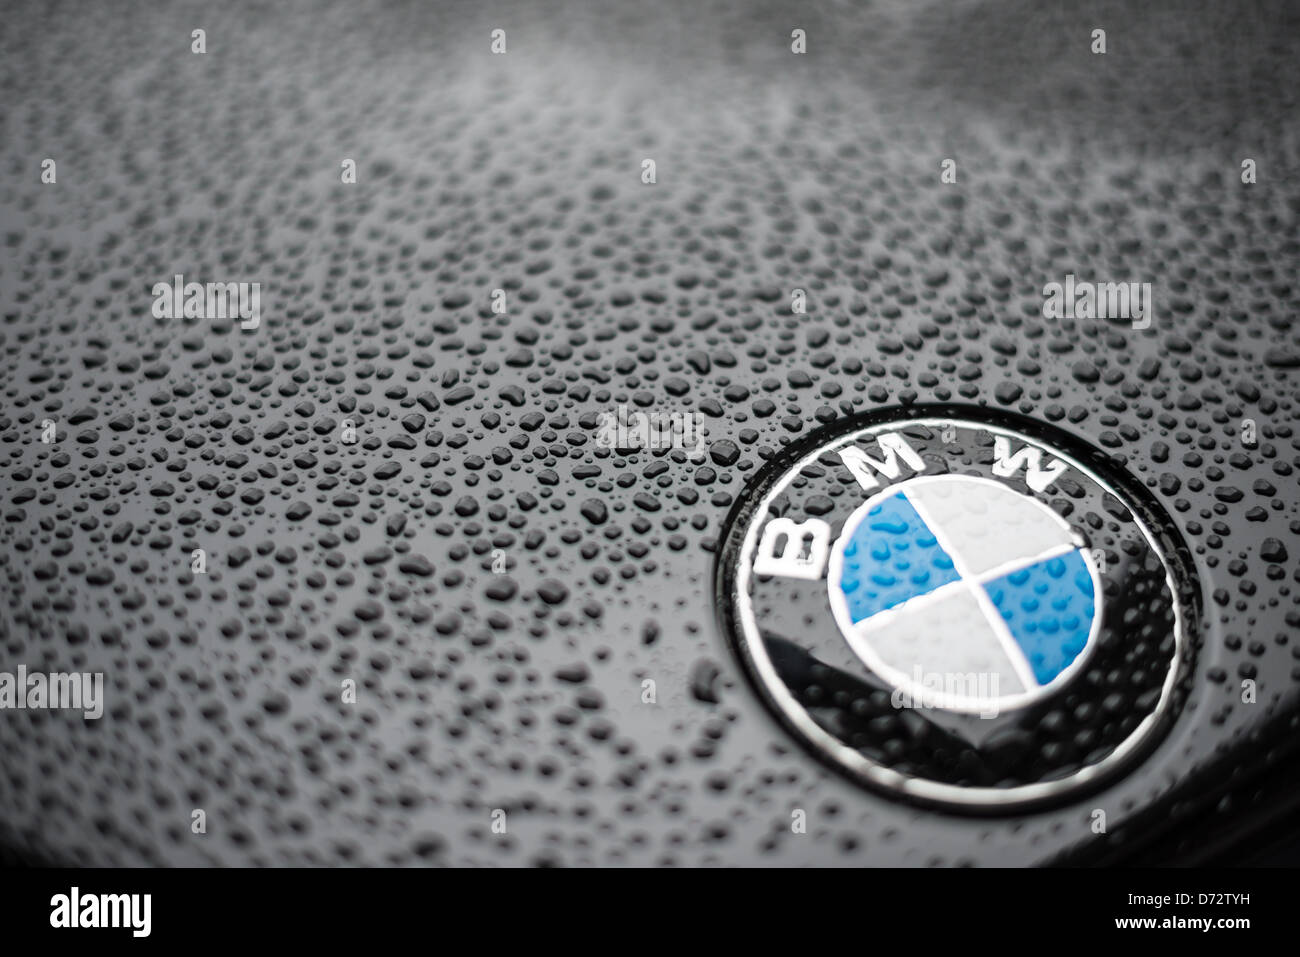 Gros plan d'un badge BMW sur le capot d'une voiture BMW noire, avec des gouttelettes d'eau formant de la pluie. Profondeur de champ. Banque D'Images